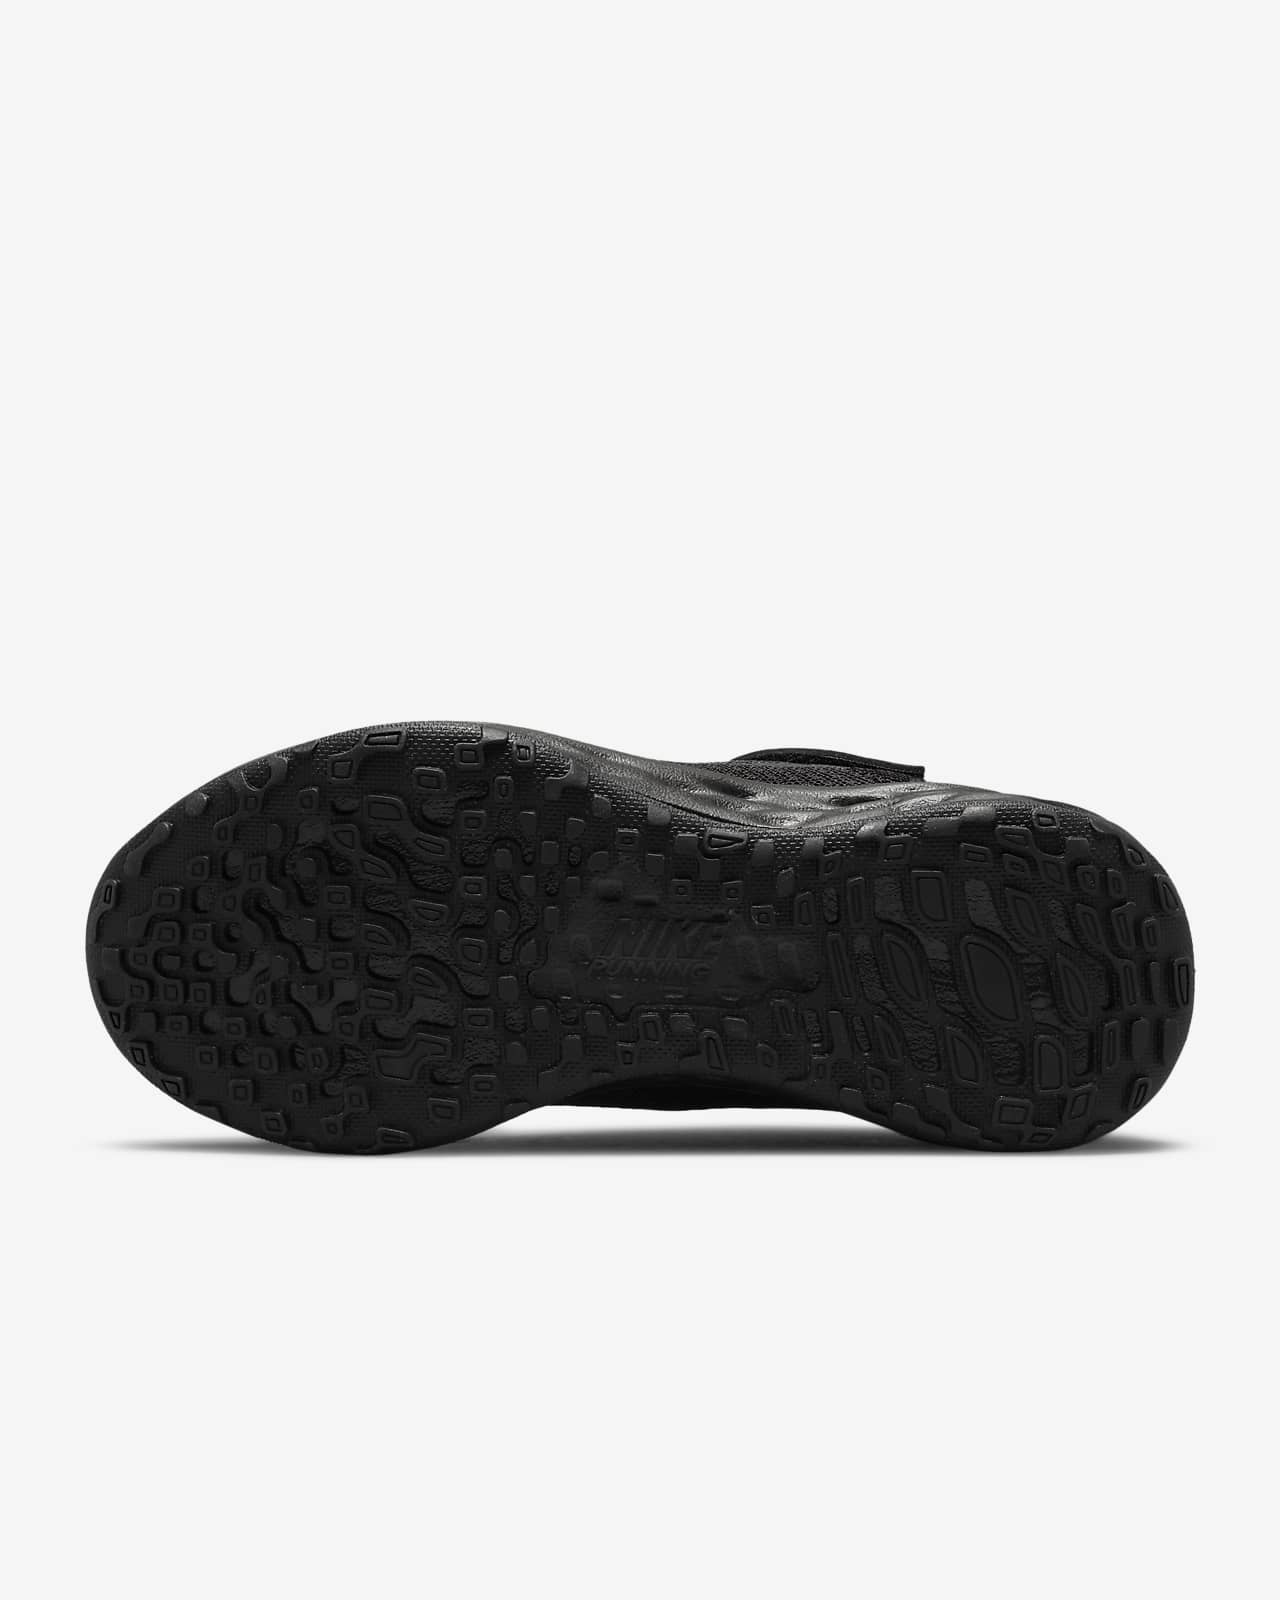 Plano nosotros engañar Nike Revolution 6 Zapatillas - Niño/a pequeño/a. Nike ES